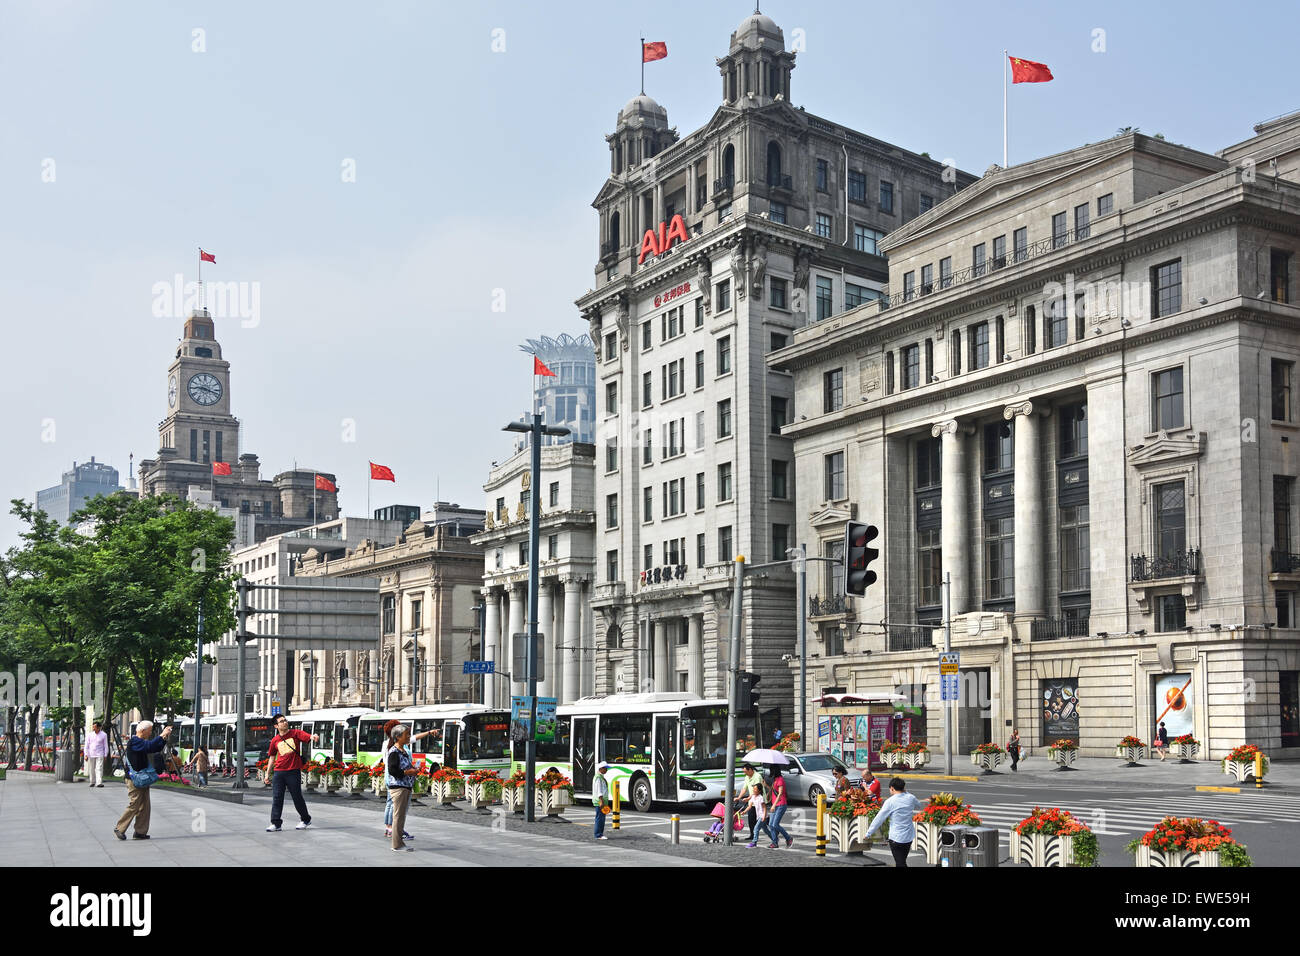 Chartered Bank von Indien Australien China Nort China Daily News AJA The Bund Shanghai China (Europäische Architektur) Stockfoto